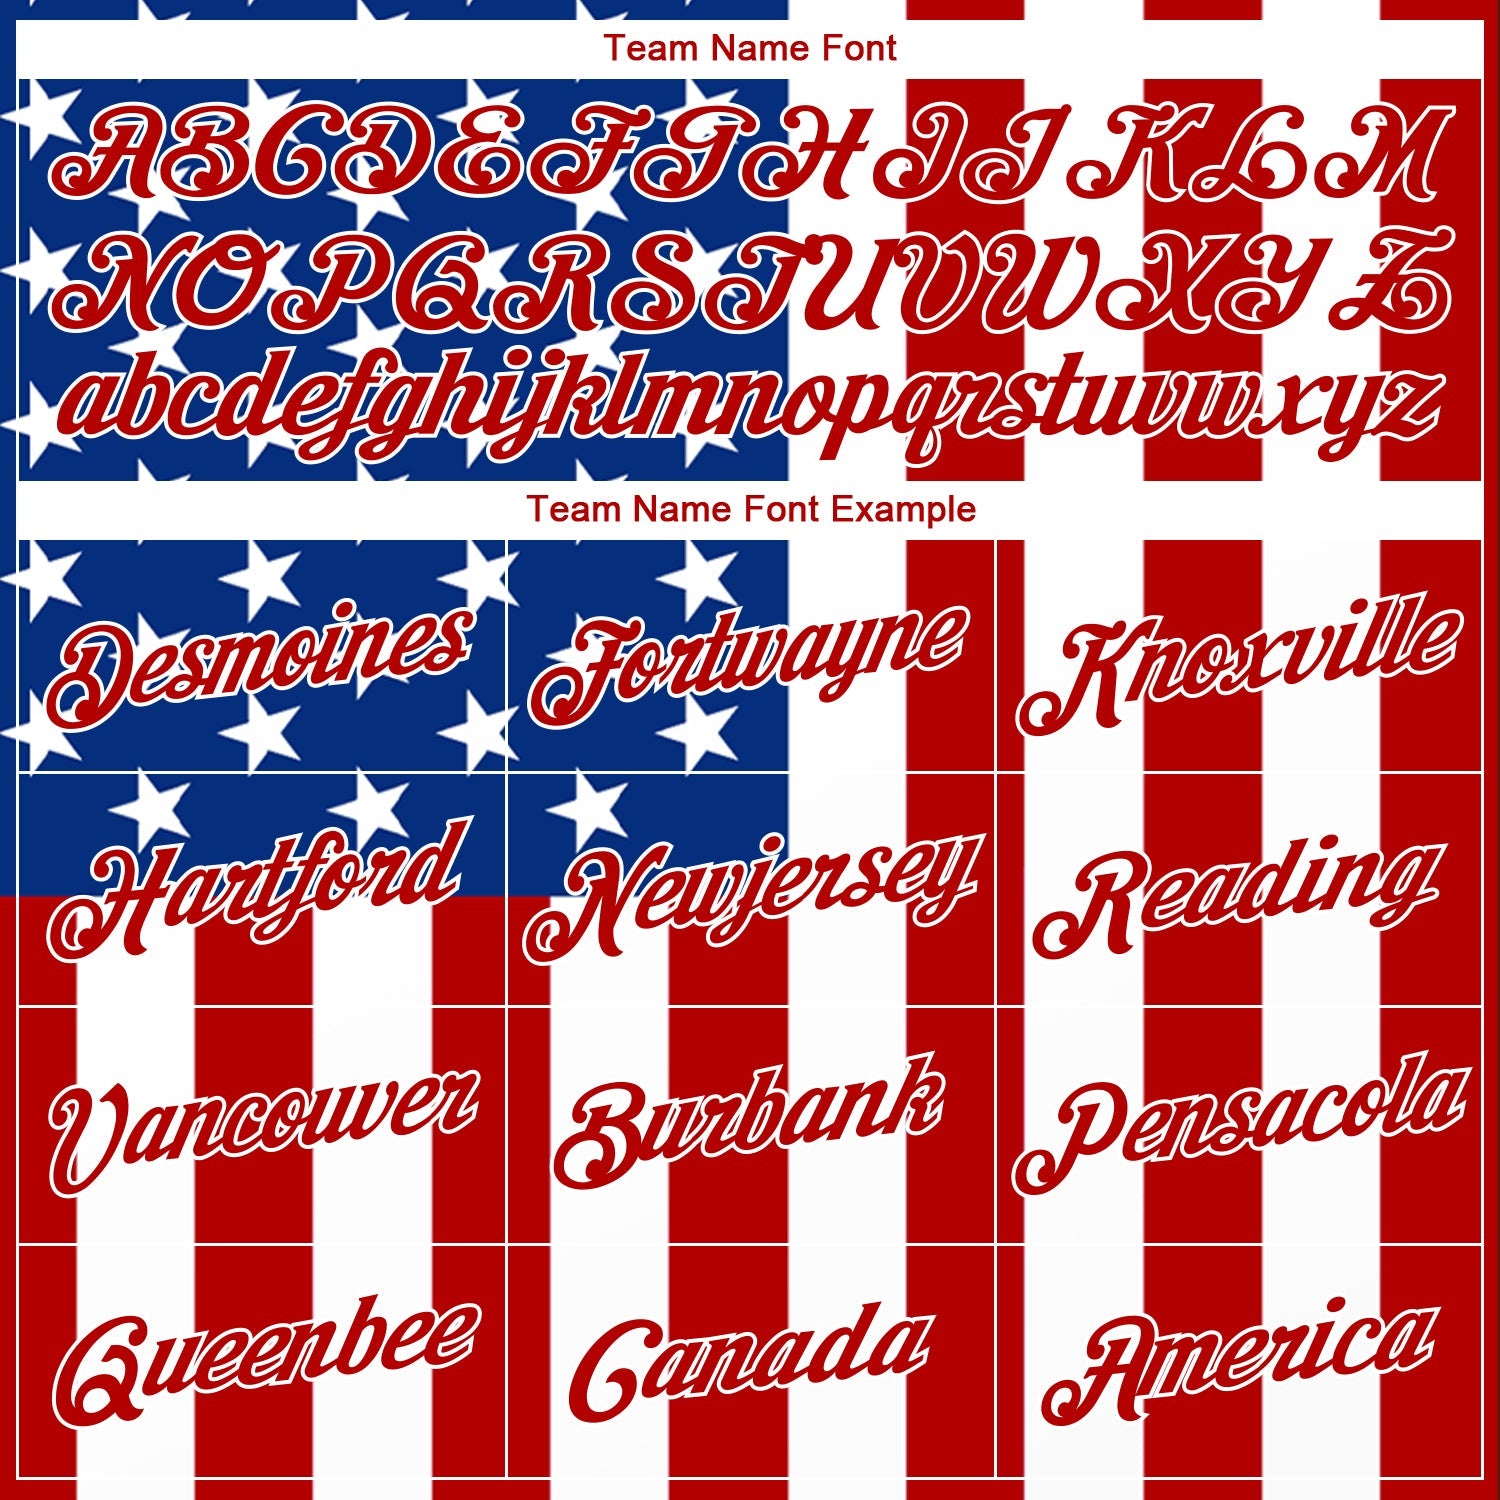 カスタム ホワイト ロイヤル レッド 3D アメリカ国旗 ファッション オーセンティック バスケットボール ジャージ